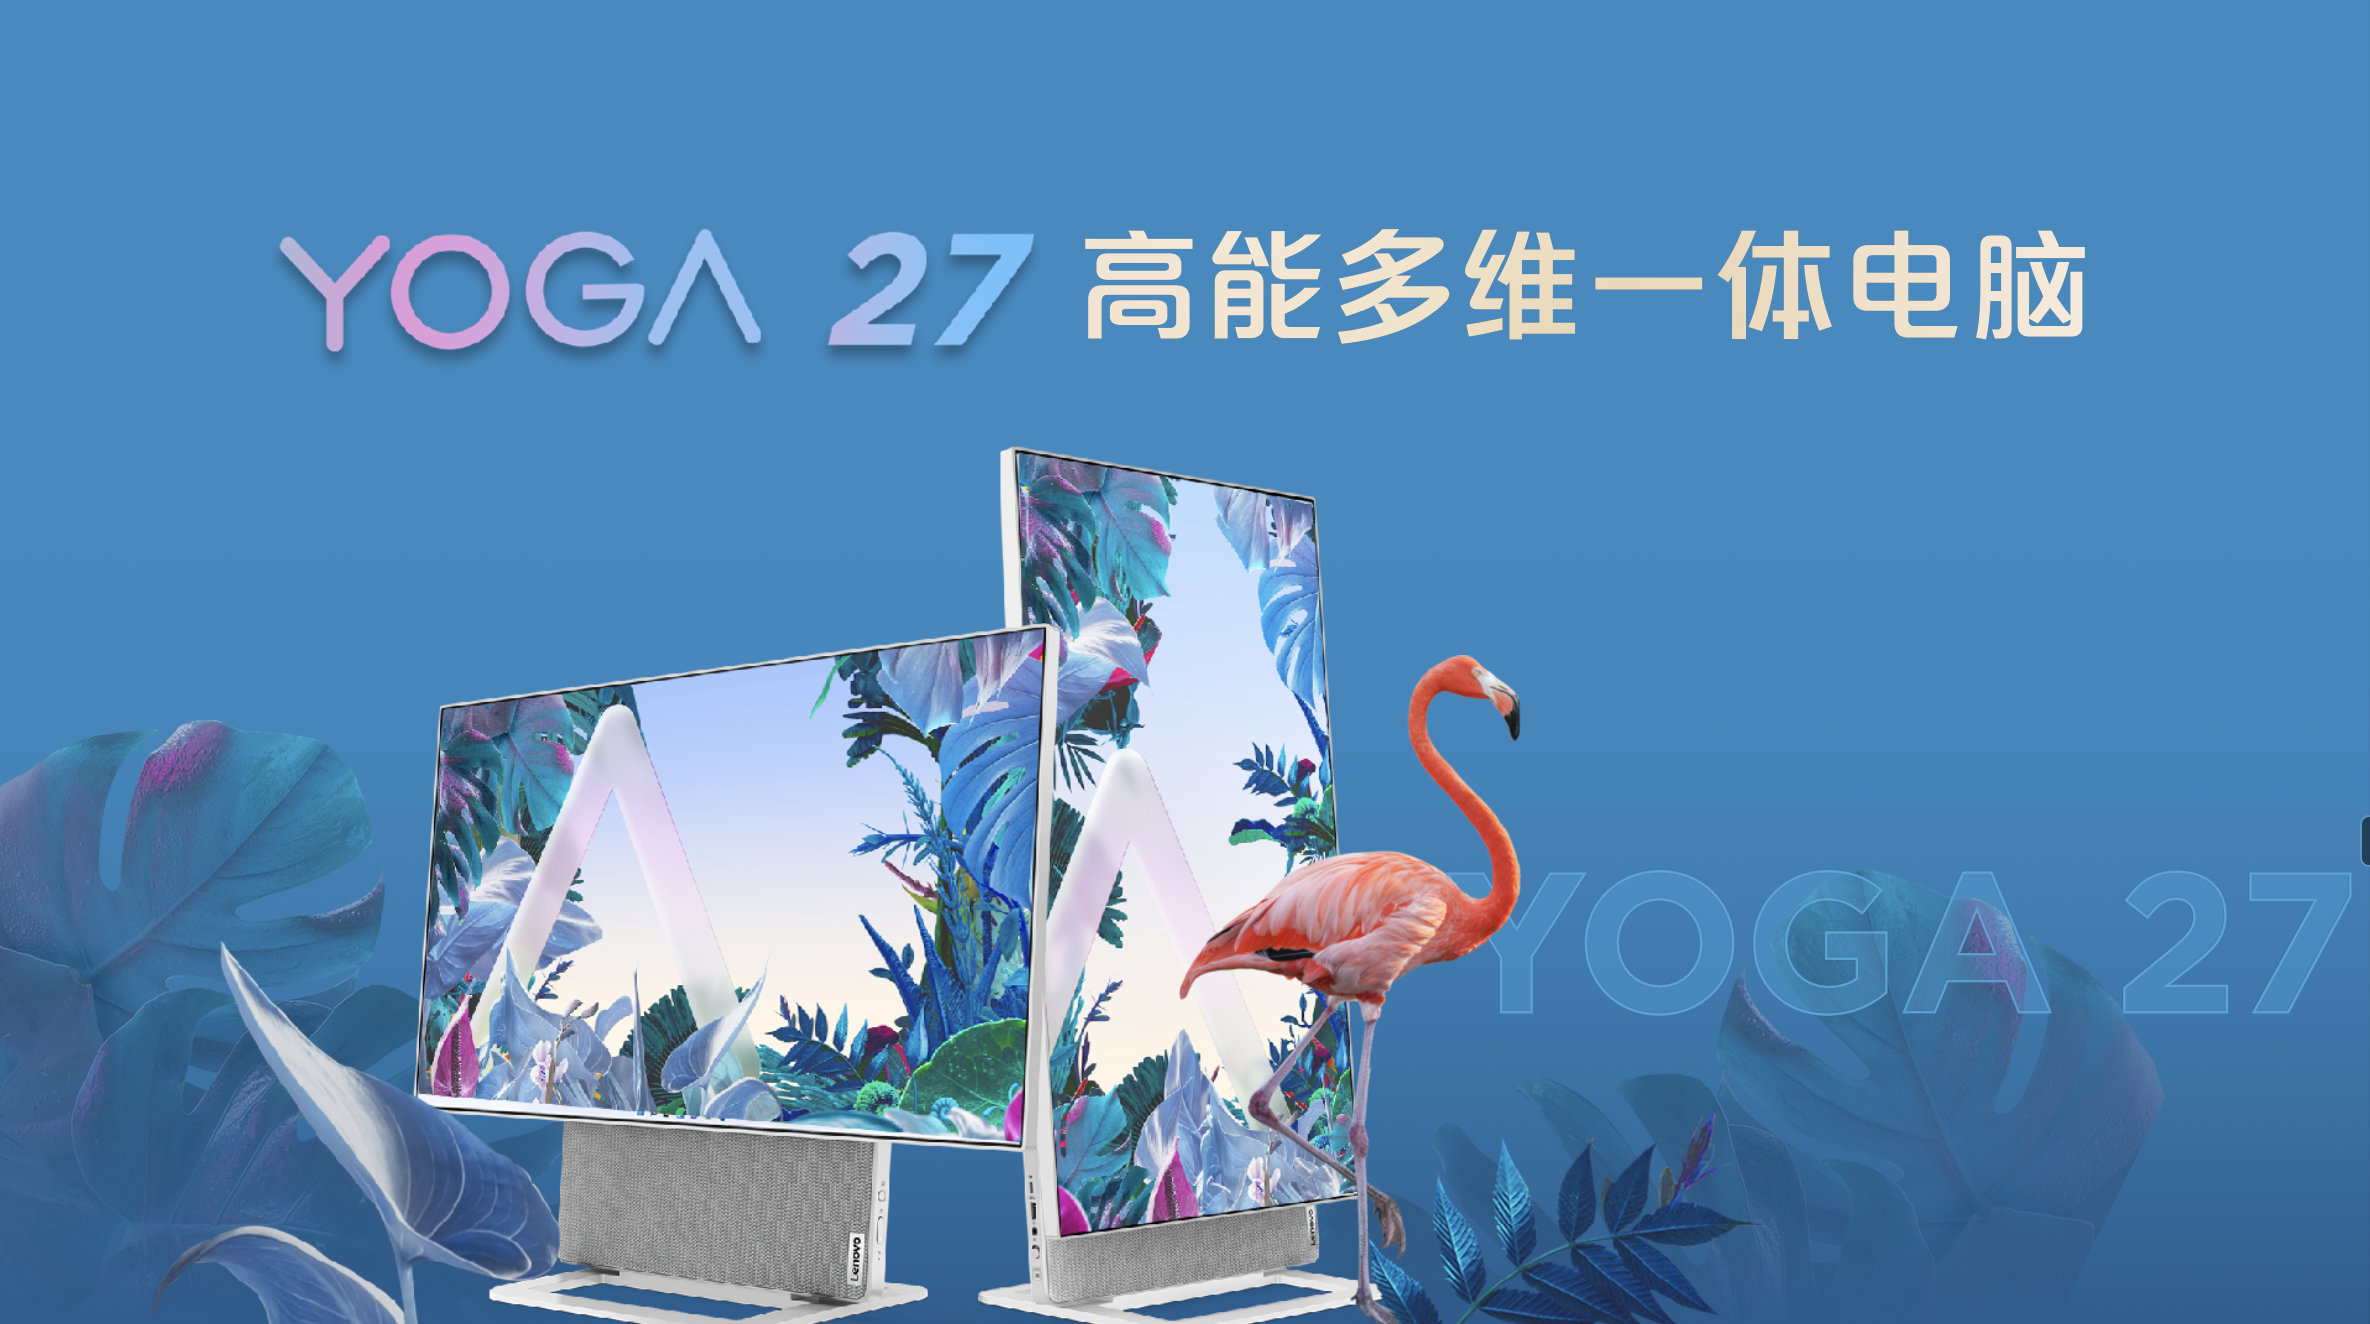 联想消费生态轻薄新品发布 YOGA与小新系列新品联袂轻装上阵 智能公会